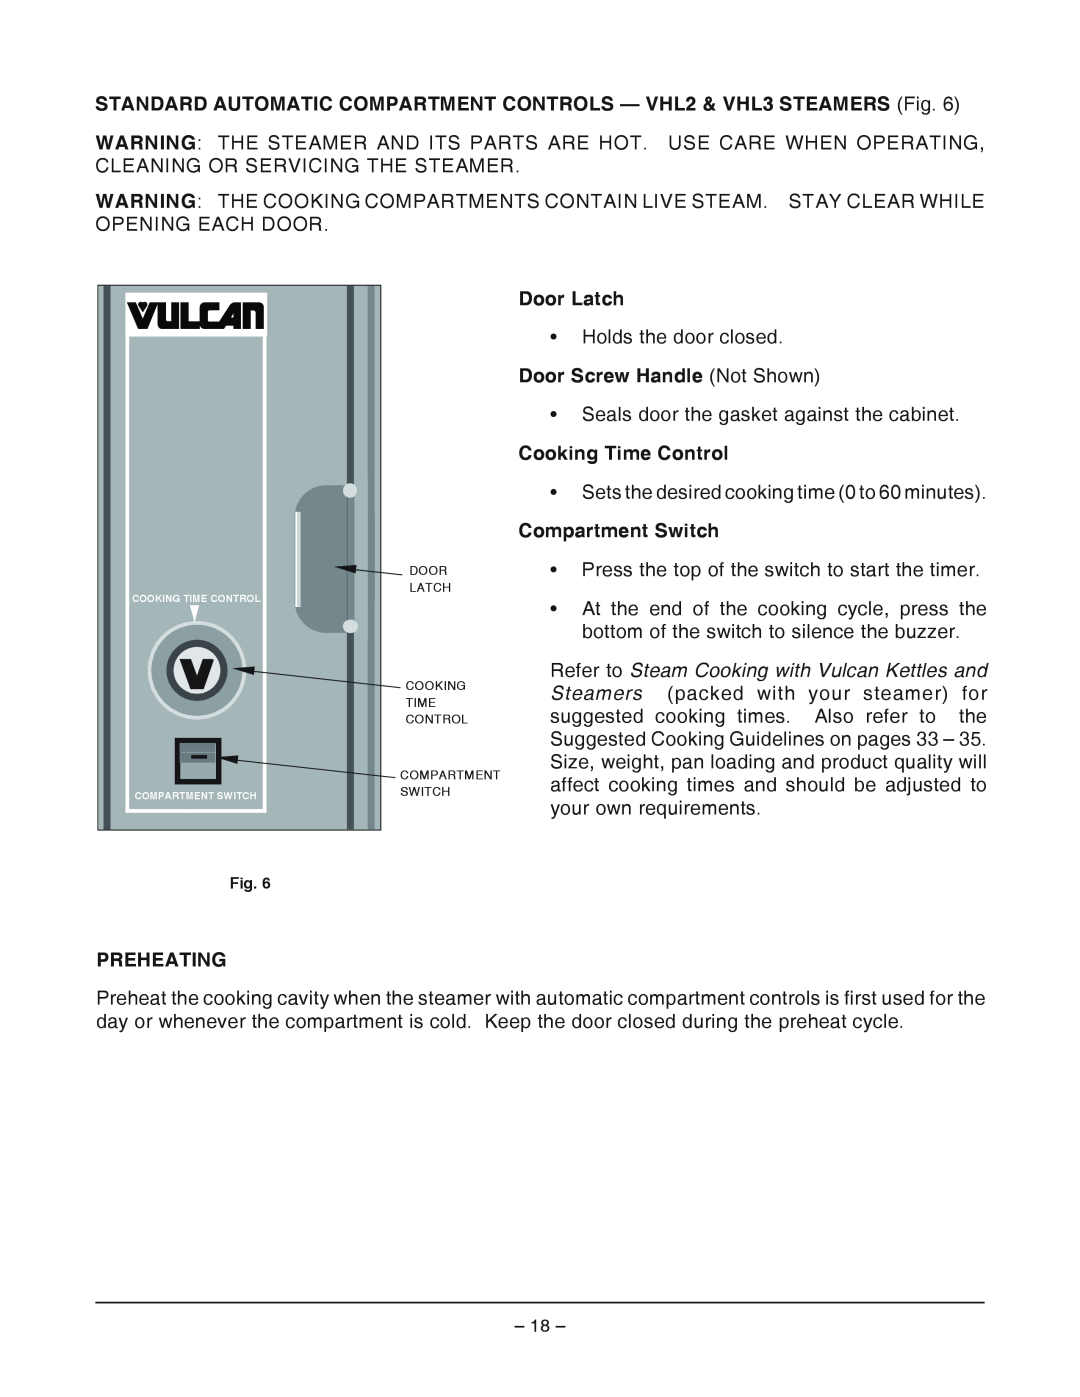 Vulcan-Hart VHX24, VHL2 Door Latch, Door Screw Handle Not Shown, Cooking Time Control, Compartment Switch, Preheating 